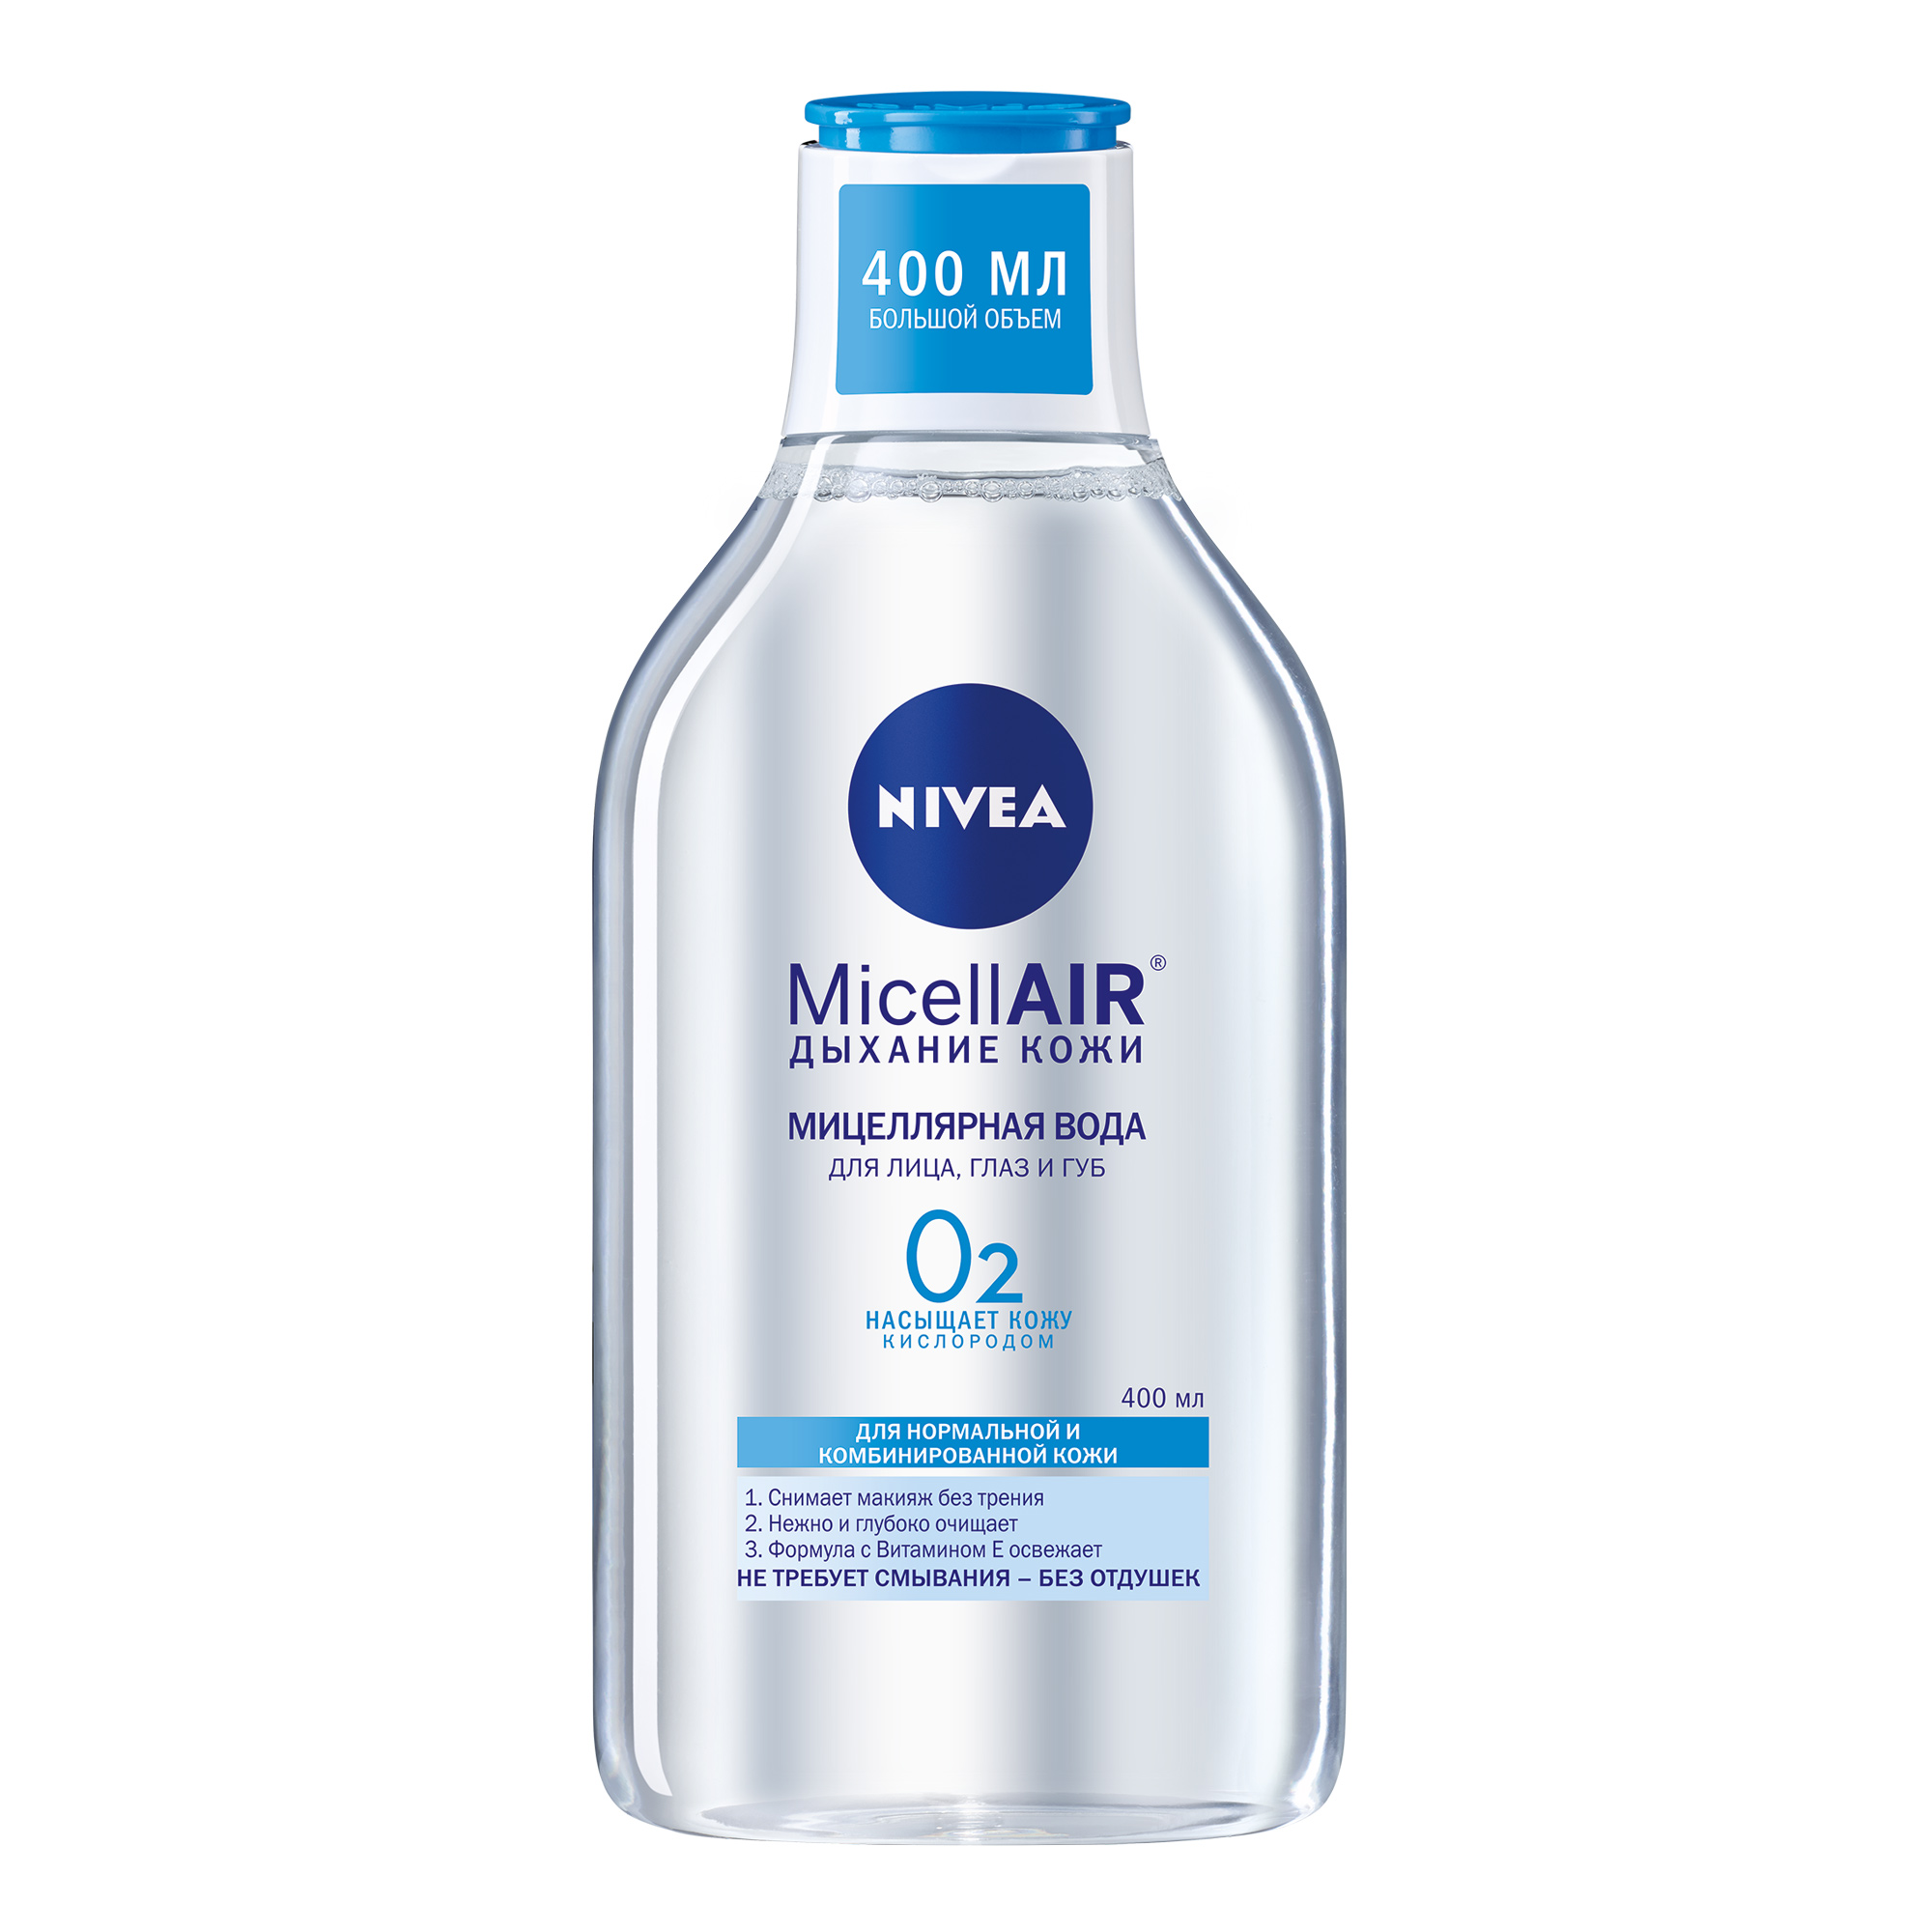 Мицеллярная вода Nivea MicellAIR Дыхание кожи для нормальной и комбинированной кожи 400 мл крем матирующий для нормальной и комбинированной кожи 50мл